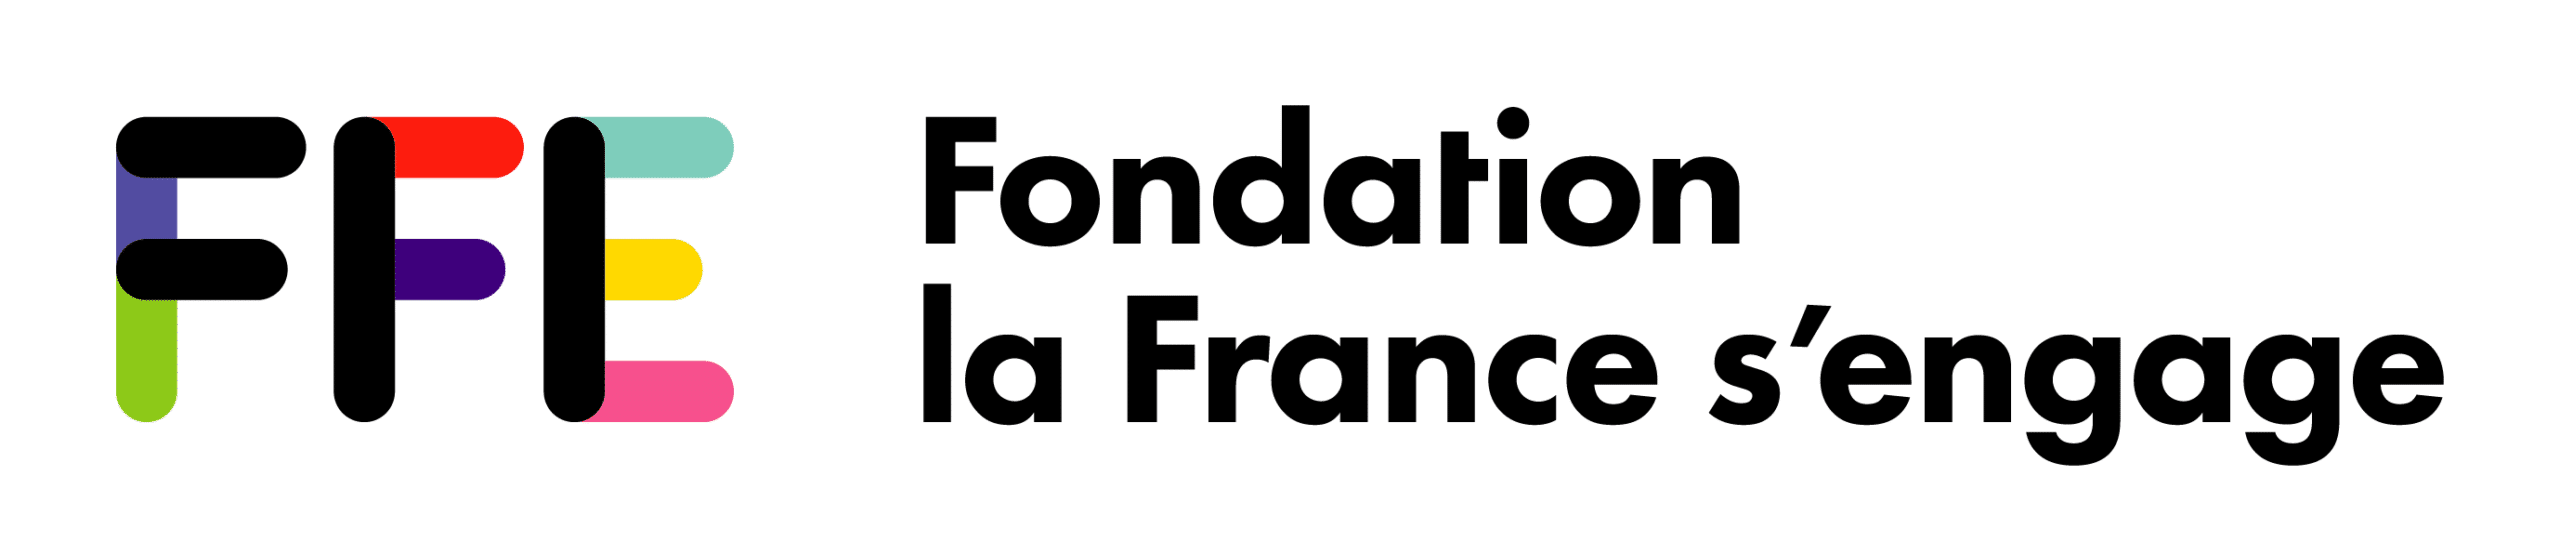 Fondation de la France s'engage